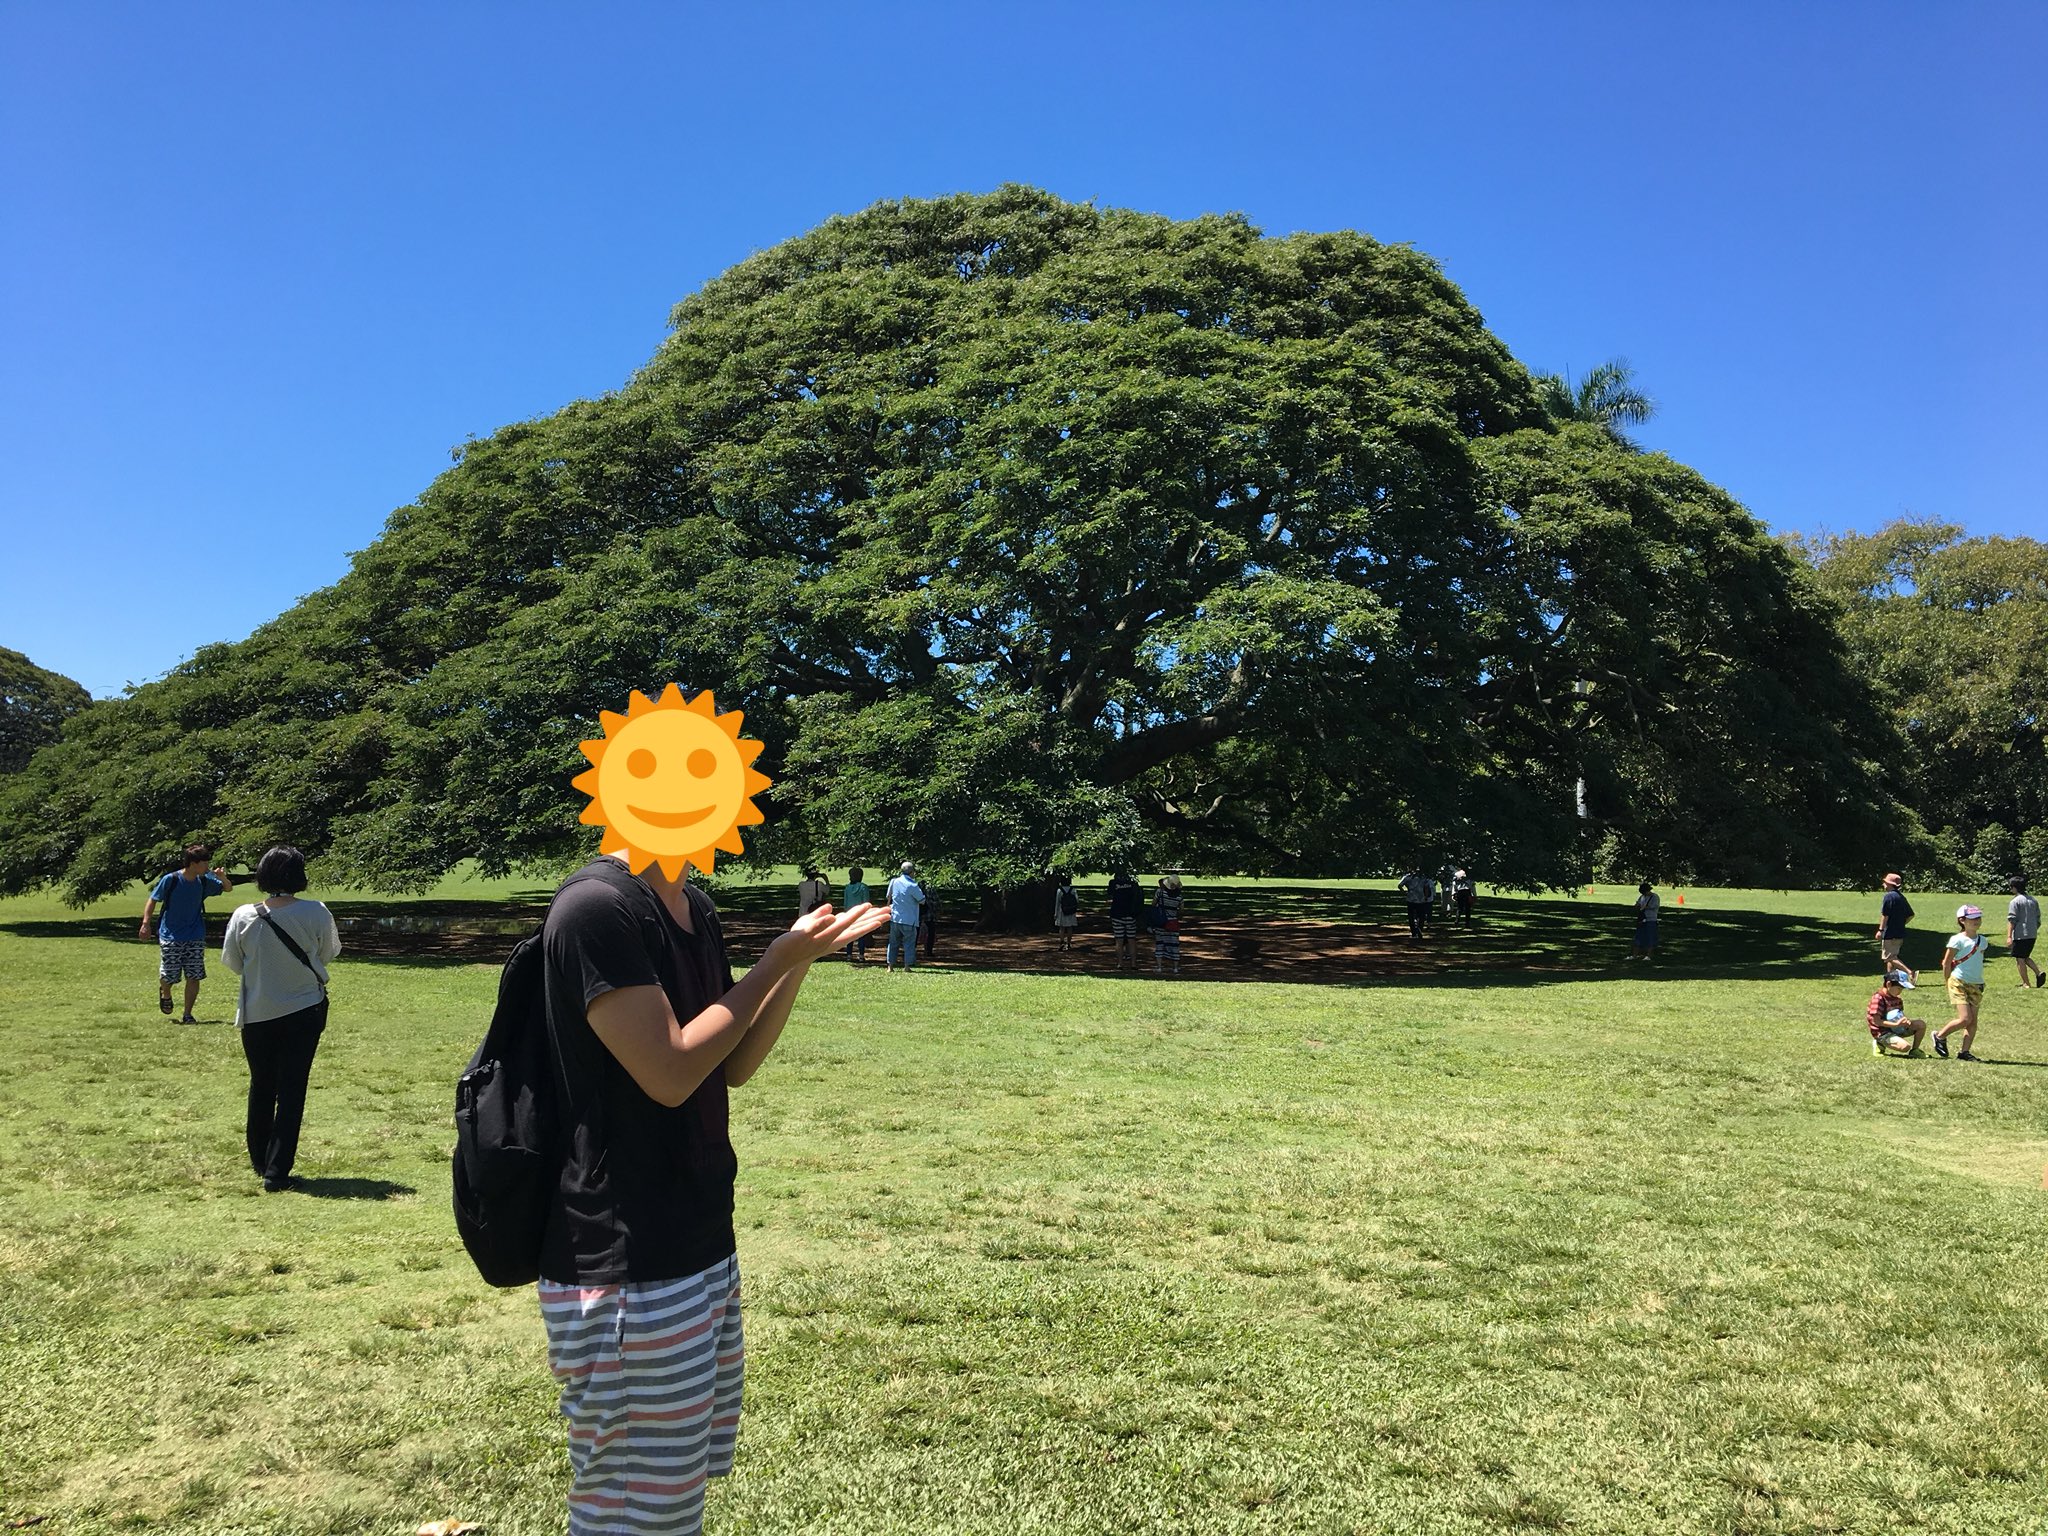 Kashiwaman 日立の樹 アラモアナガーデン 日立製作所のcm この木なんの木 でお馴染みの 日本一有名な樹 柏サポとしてぜひ一度来たい場所だった 夢が叶った その雄大さに感動した T Co Y8ovmikxev Twitter